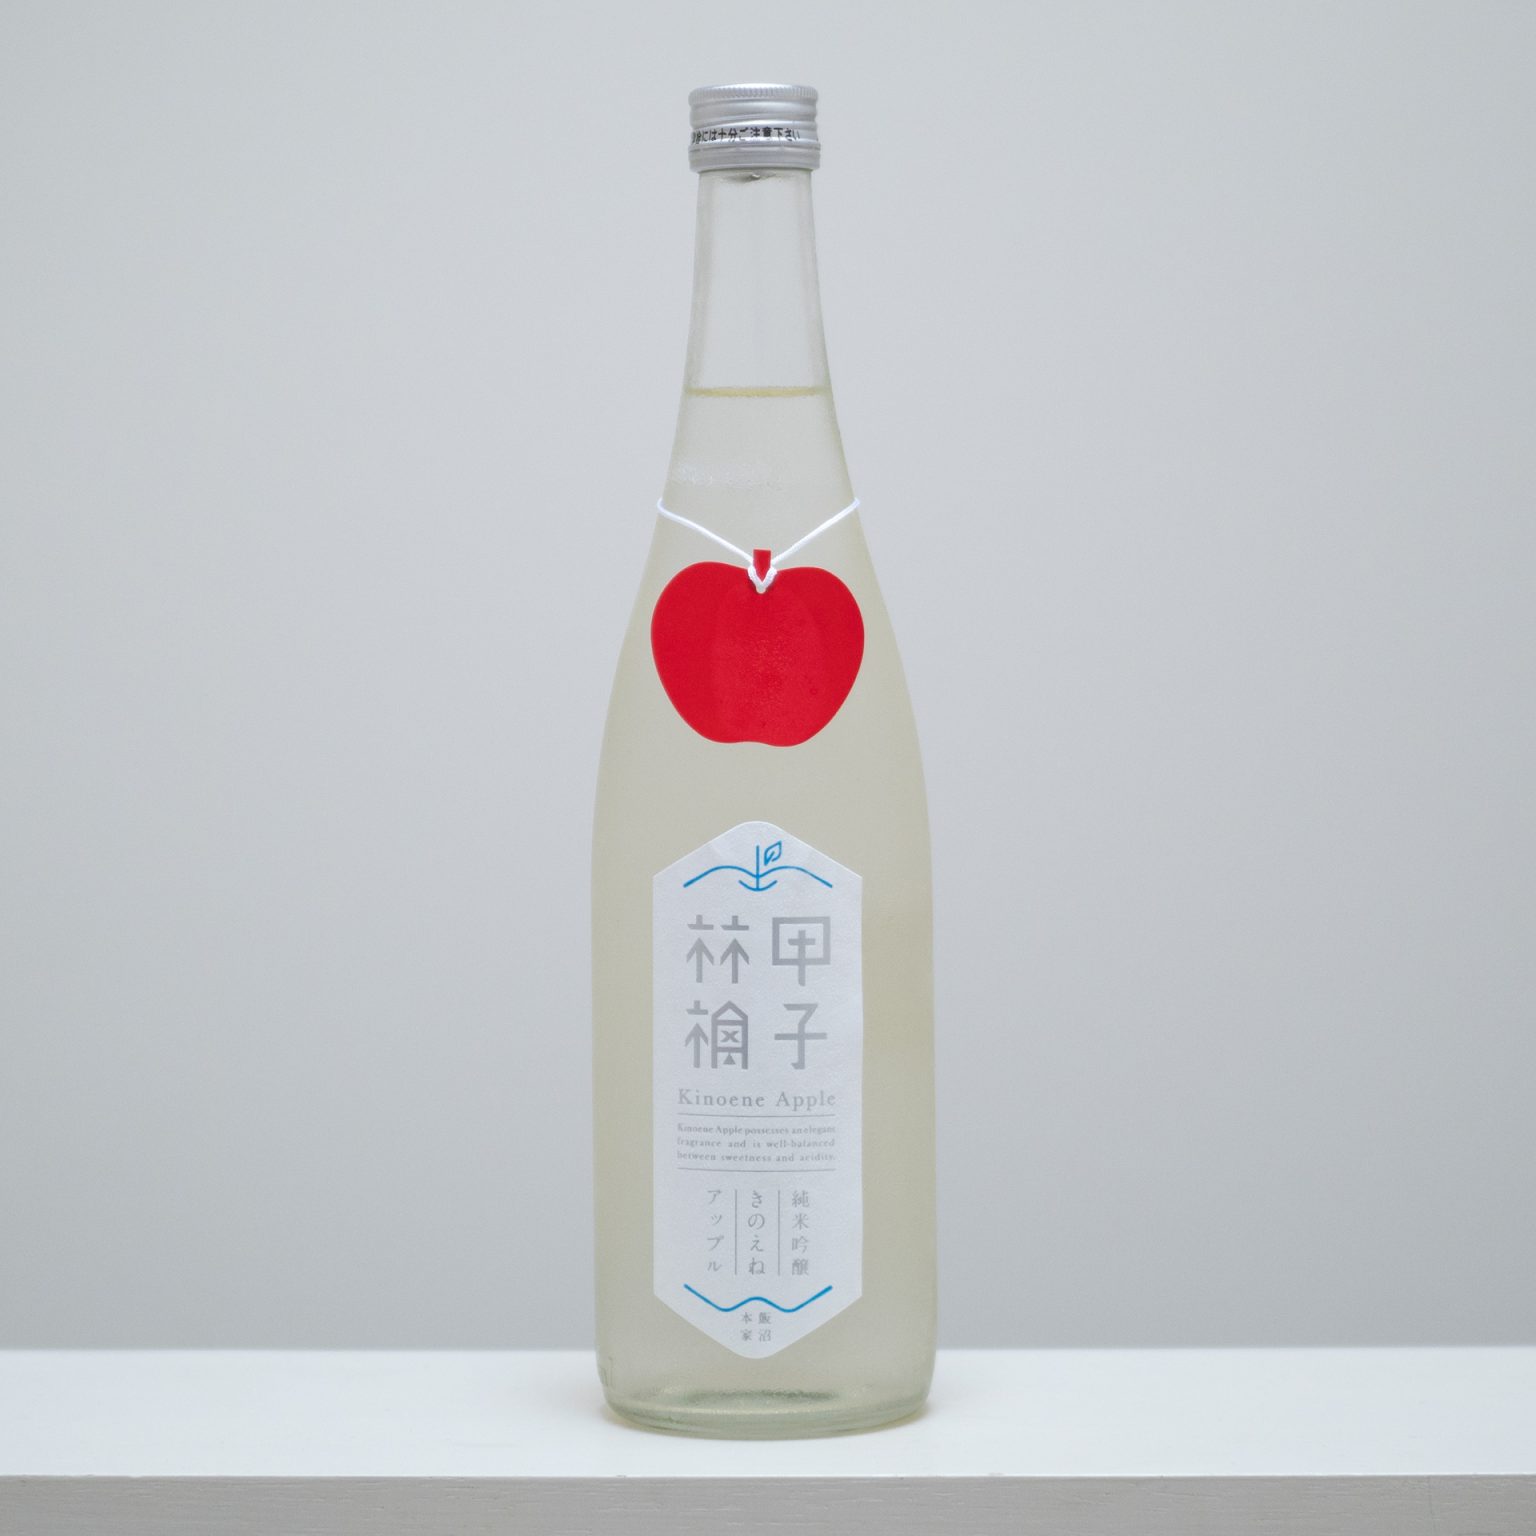 千葉県印旛郡にある飯沼本家の人気商品。リンゴ酸のほどよい酸味が飲みやすく、日本酒初心者にもオススメ。